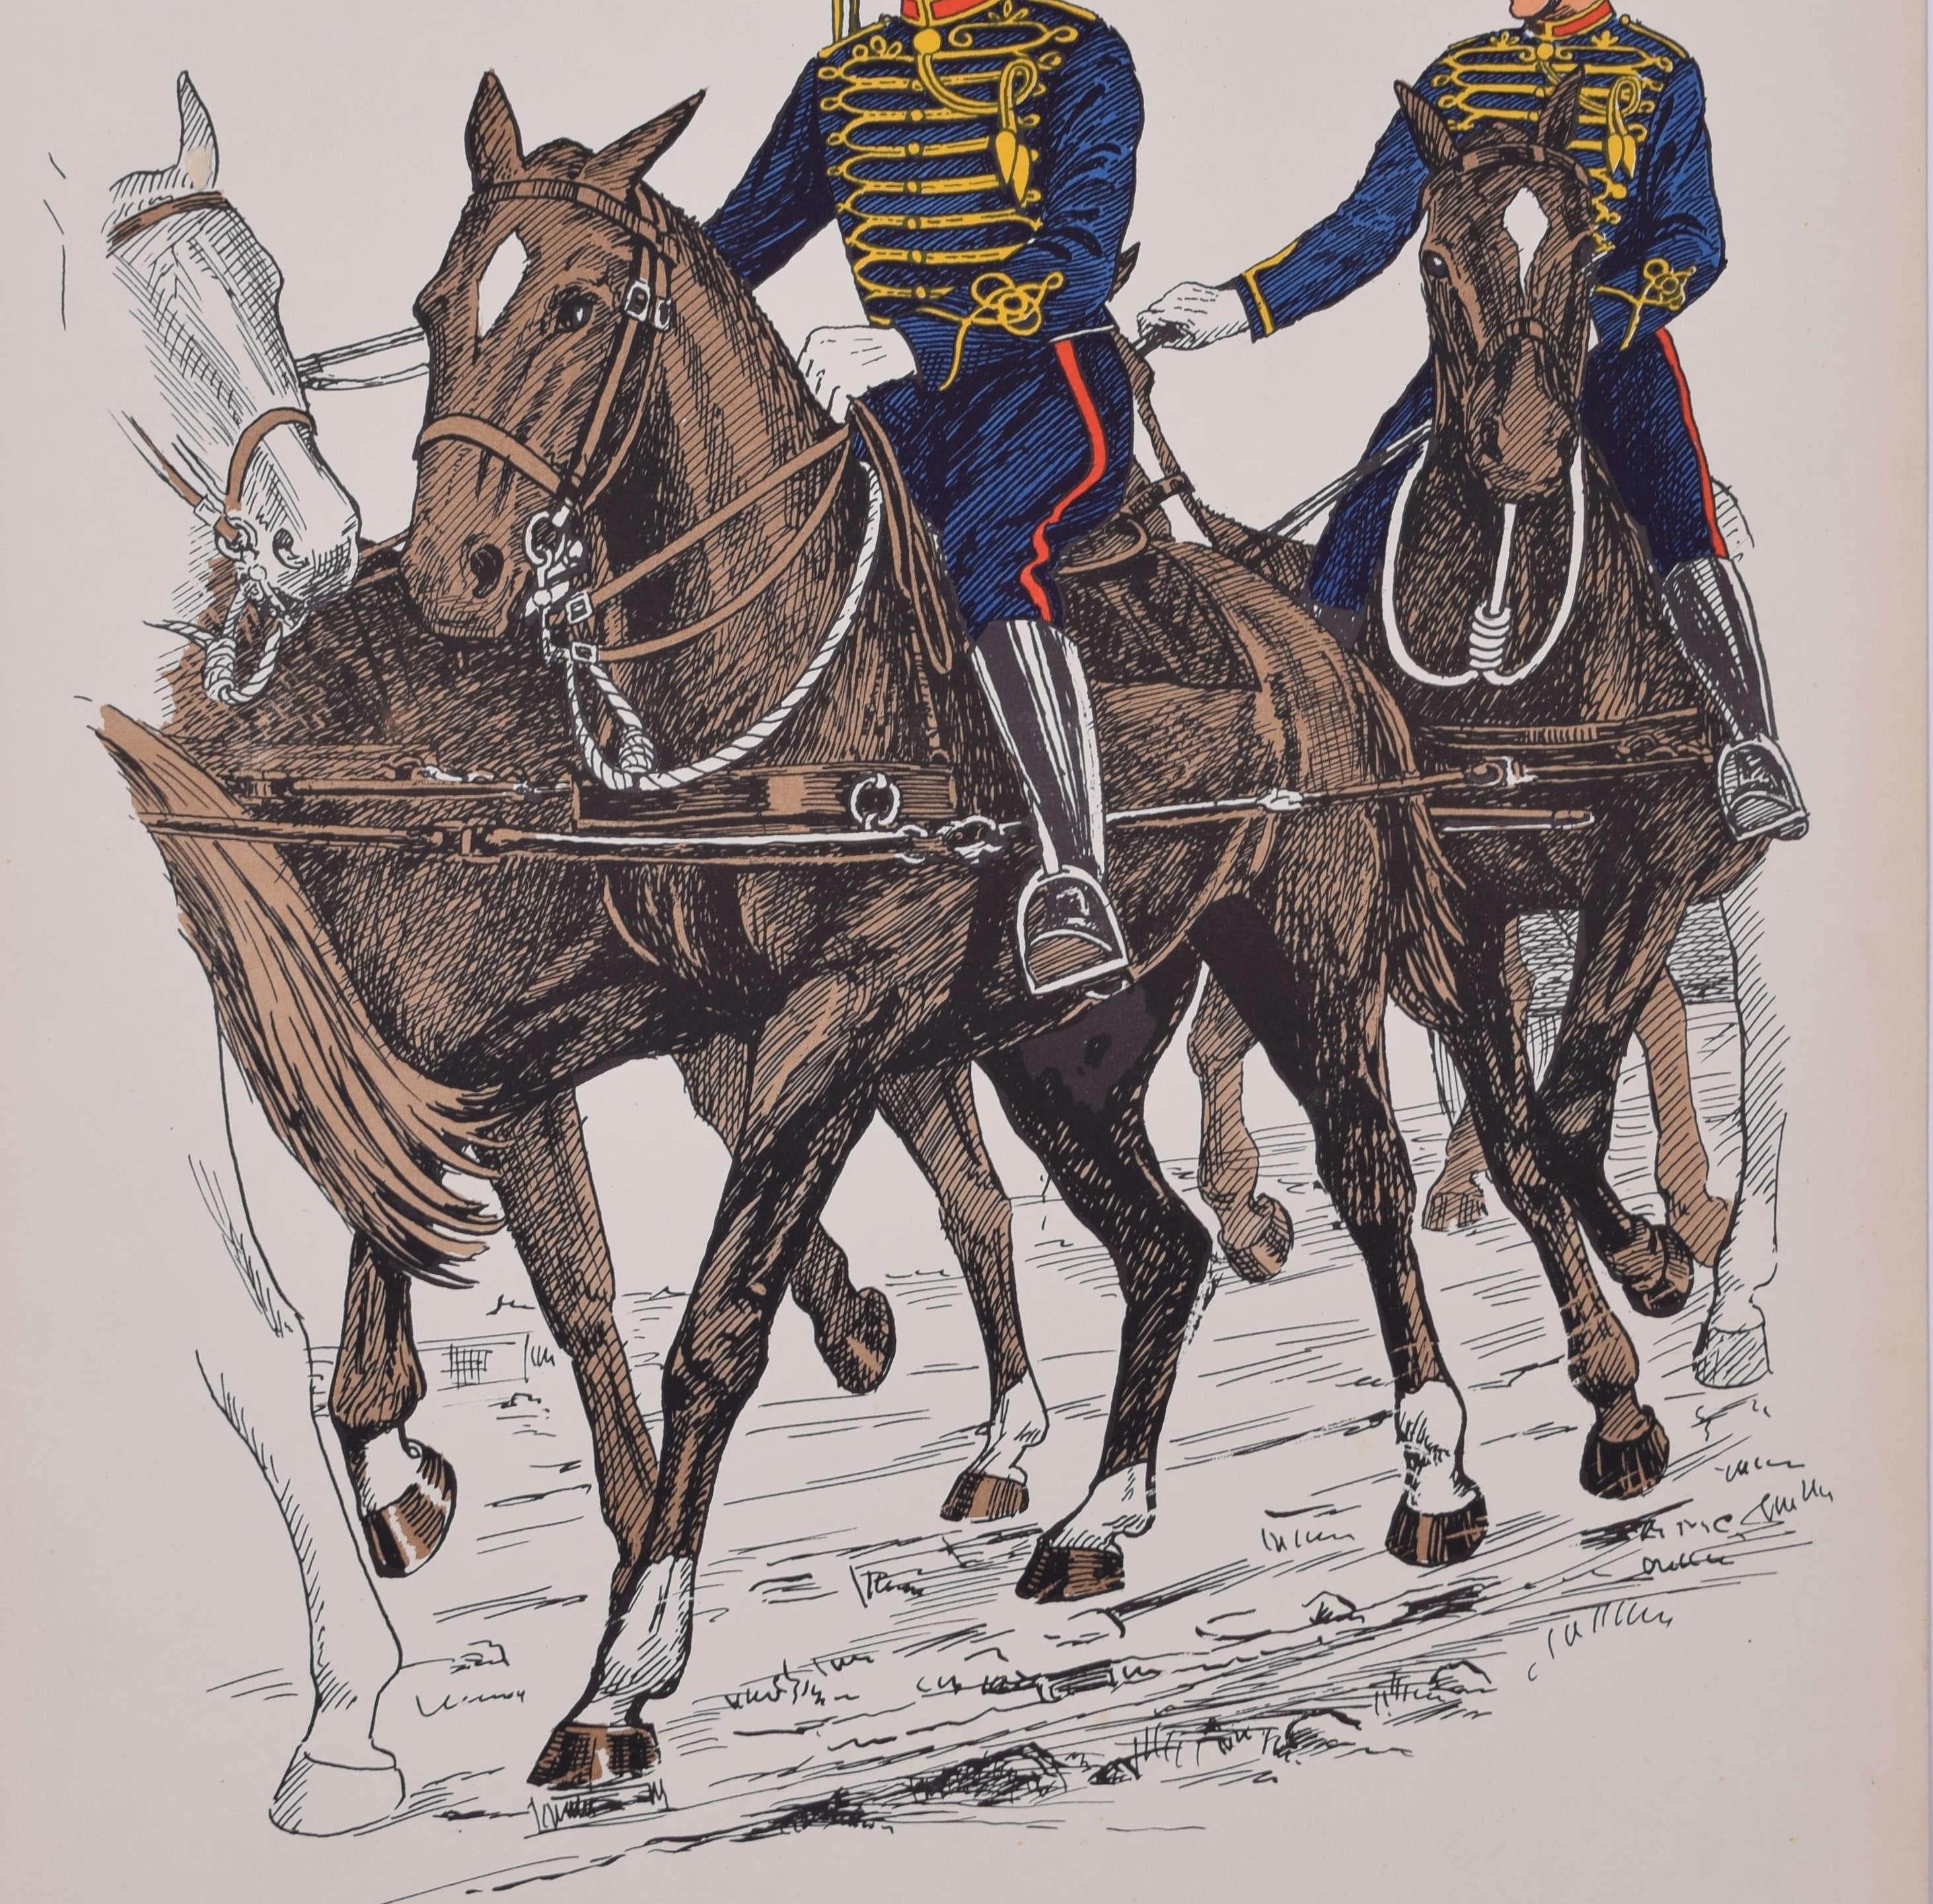 Uniform der Royal Horse Artillery Drivers 1900
Lithographie
50 x 31 cm

Produziert für das Institute of Army Education. Gedruckt für das HM Stationery Office von I A Limited, Southall 51.

Diese Plakate wurden vom Institut für Armeeerziehung